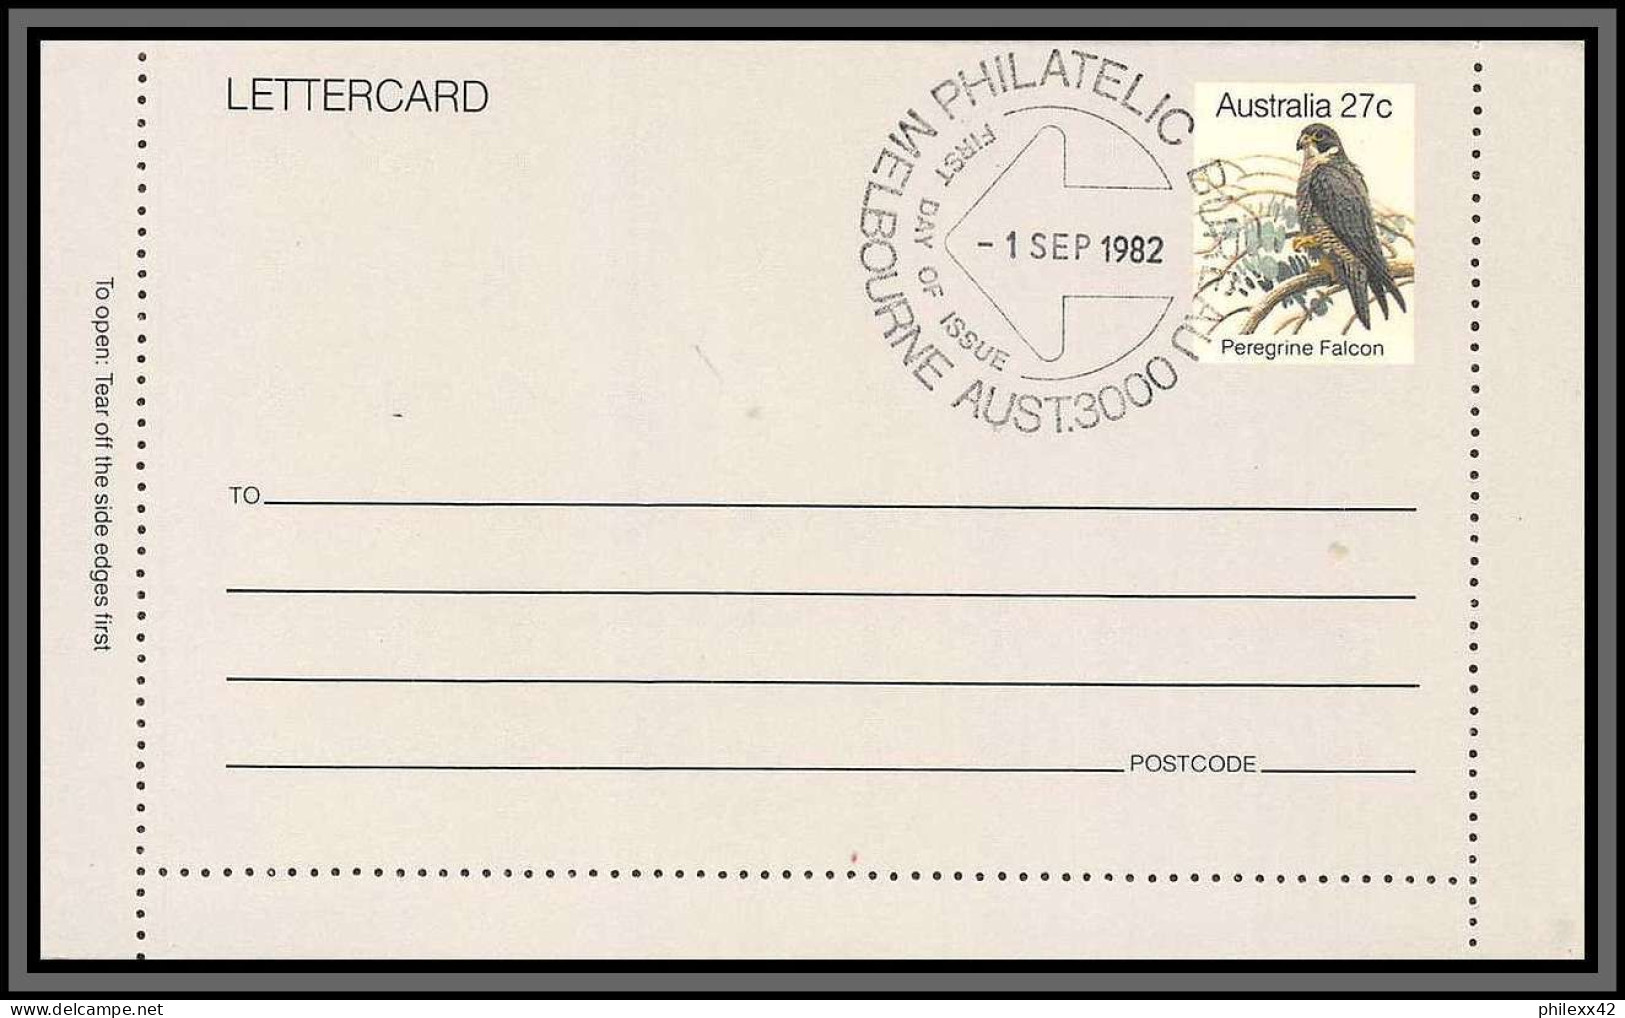 11253 PEREGRINE FALCON Faucon Pèlerin 1982 Entier Stationery Letter Card Australie Australia  - Entiers Postaux